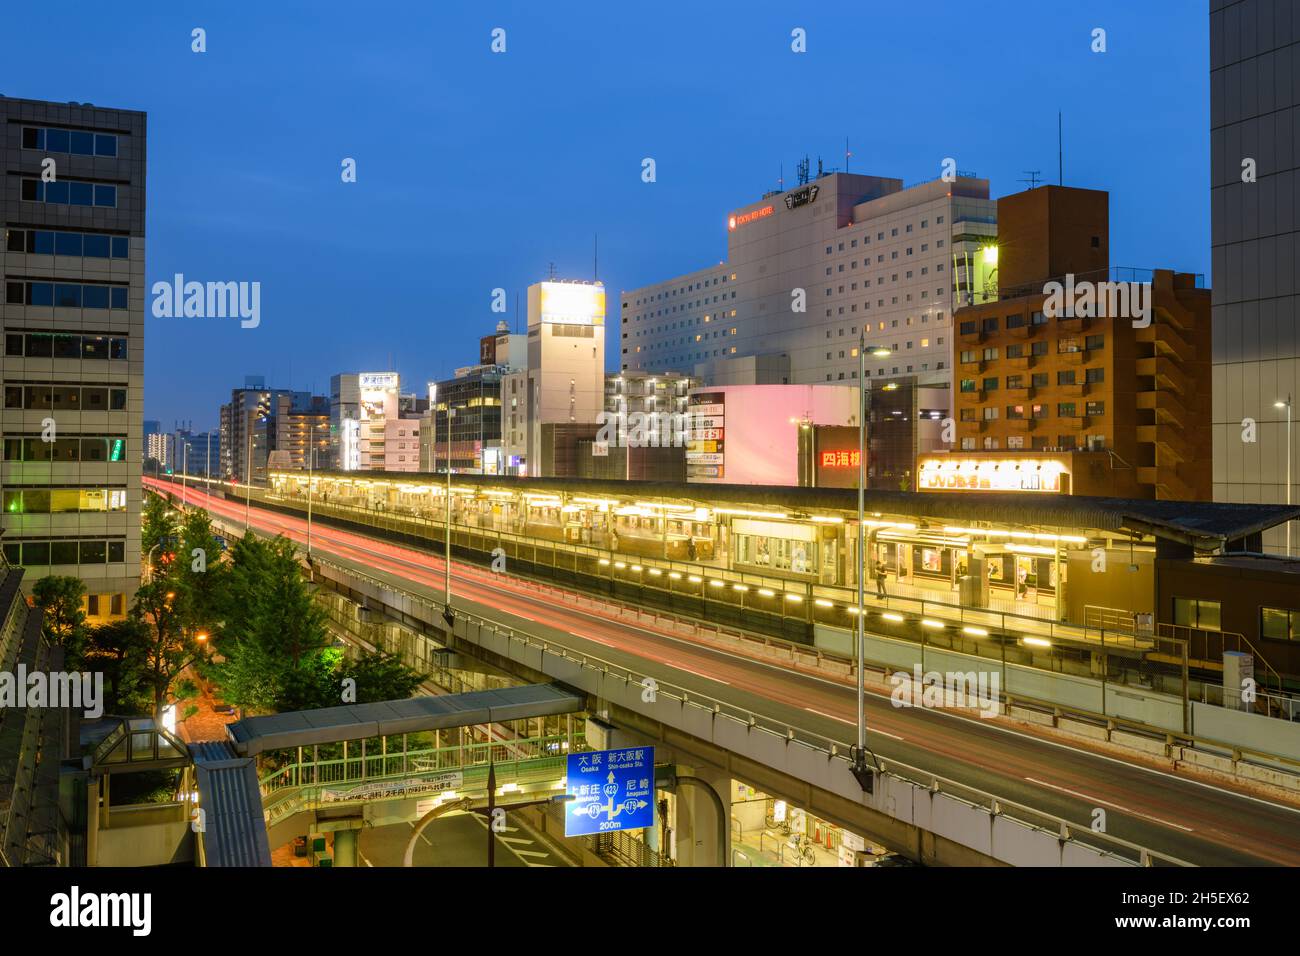 Osaka, Japan - 29 June 2019: Dusk of Omiya train station with Osaka cityscape skyline. Stock Photo